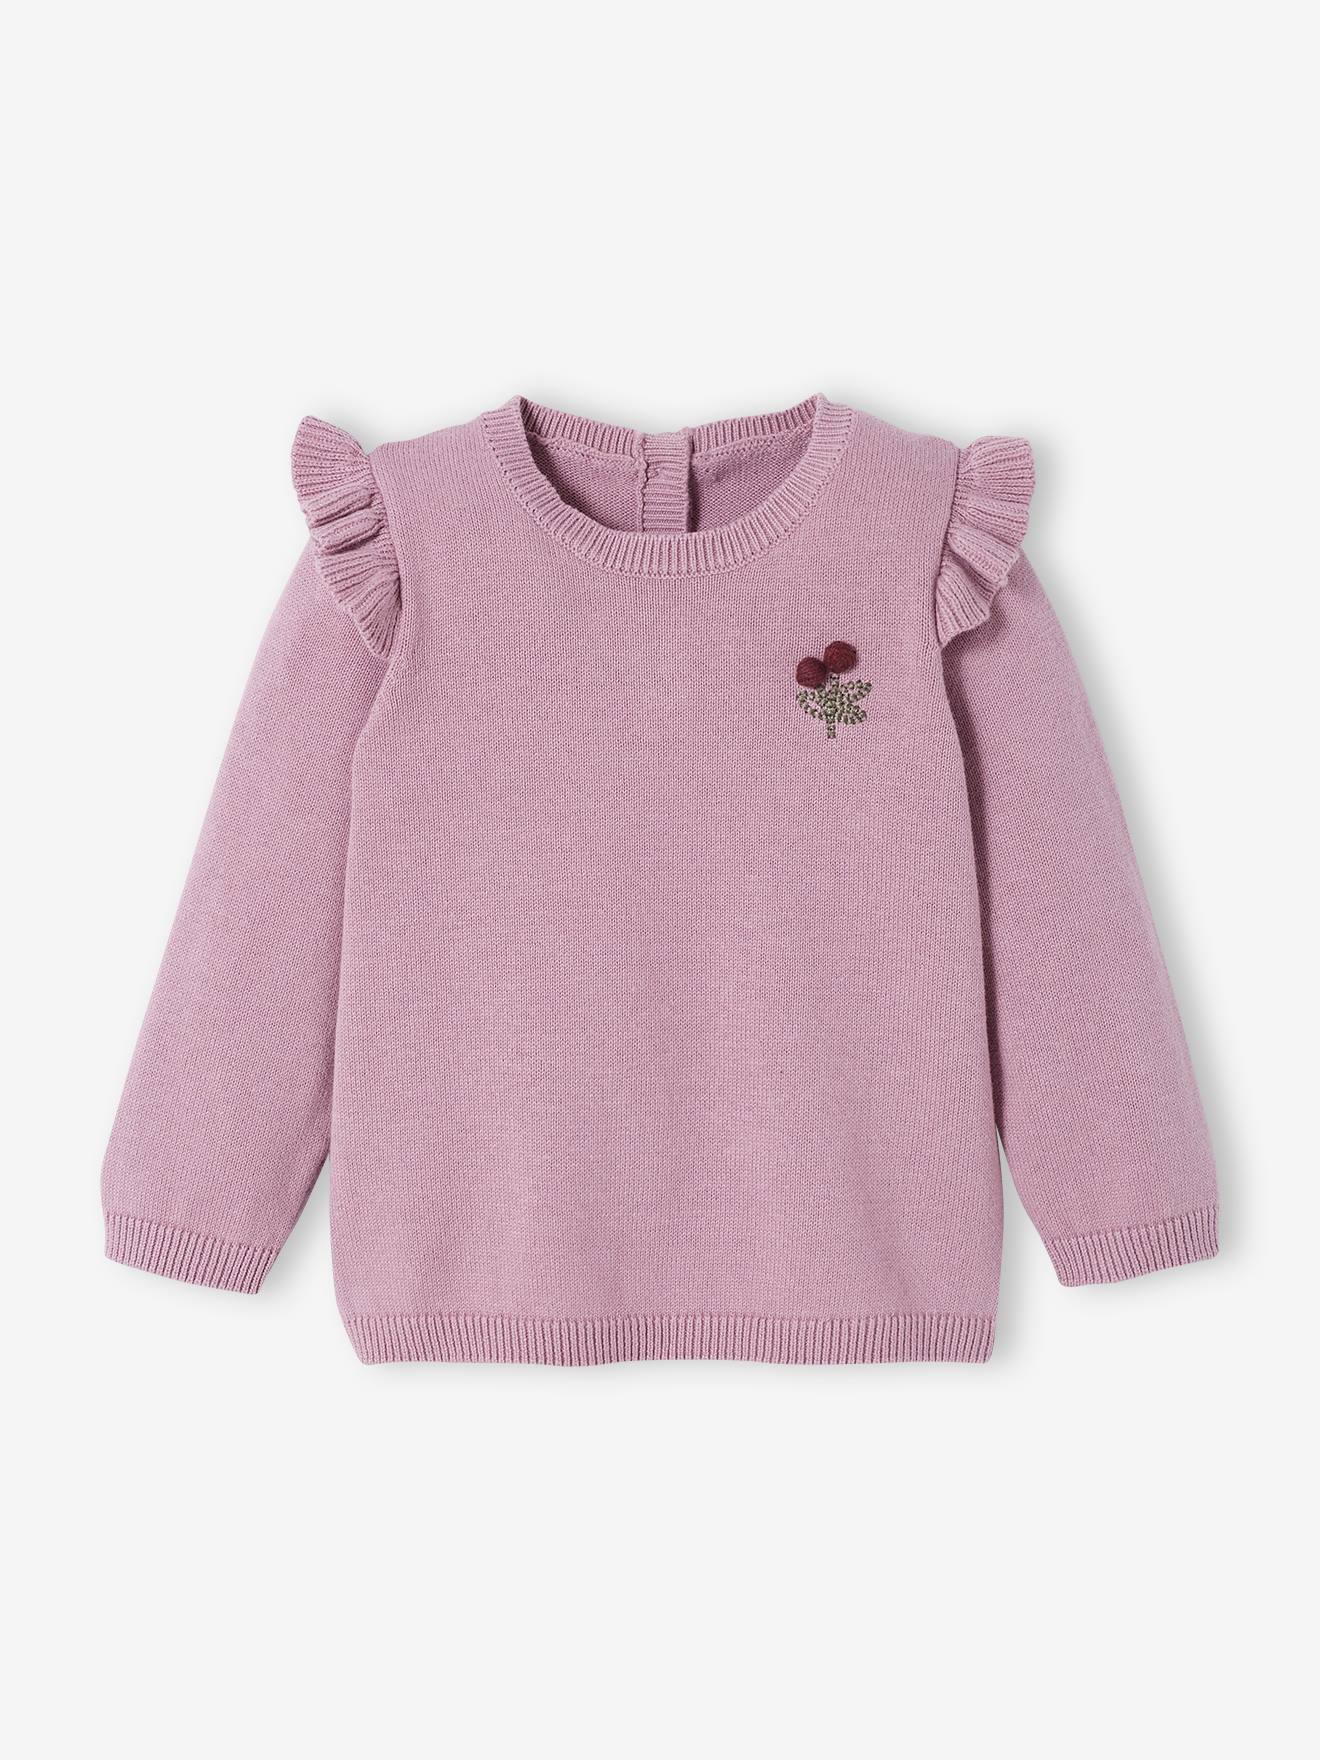 Baby meisje vest trui instellen Funky rood en paars bonte met hart Appliques Kleding Jongenskleding Babykleding voor jongens Truien 